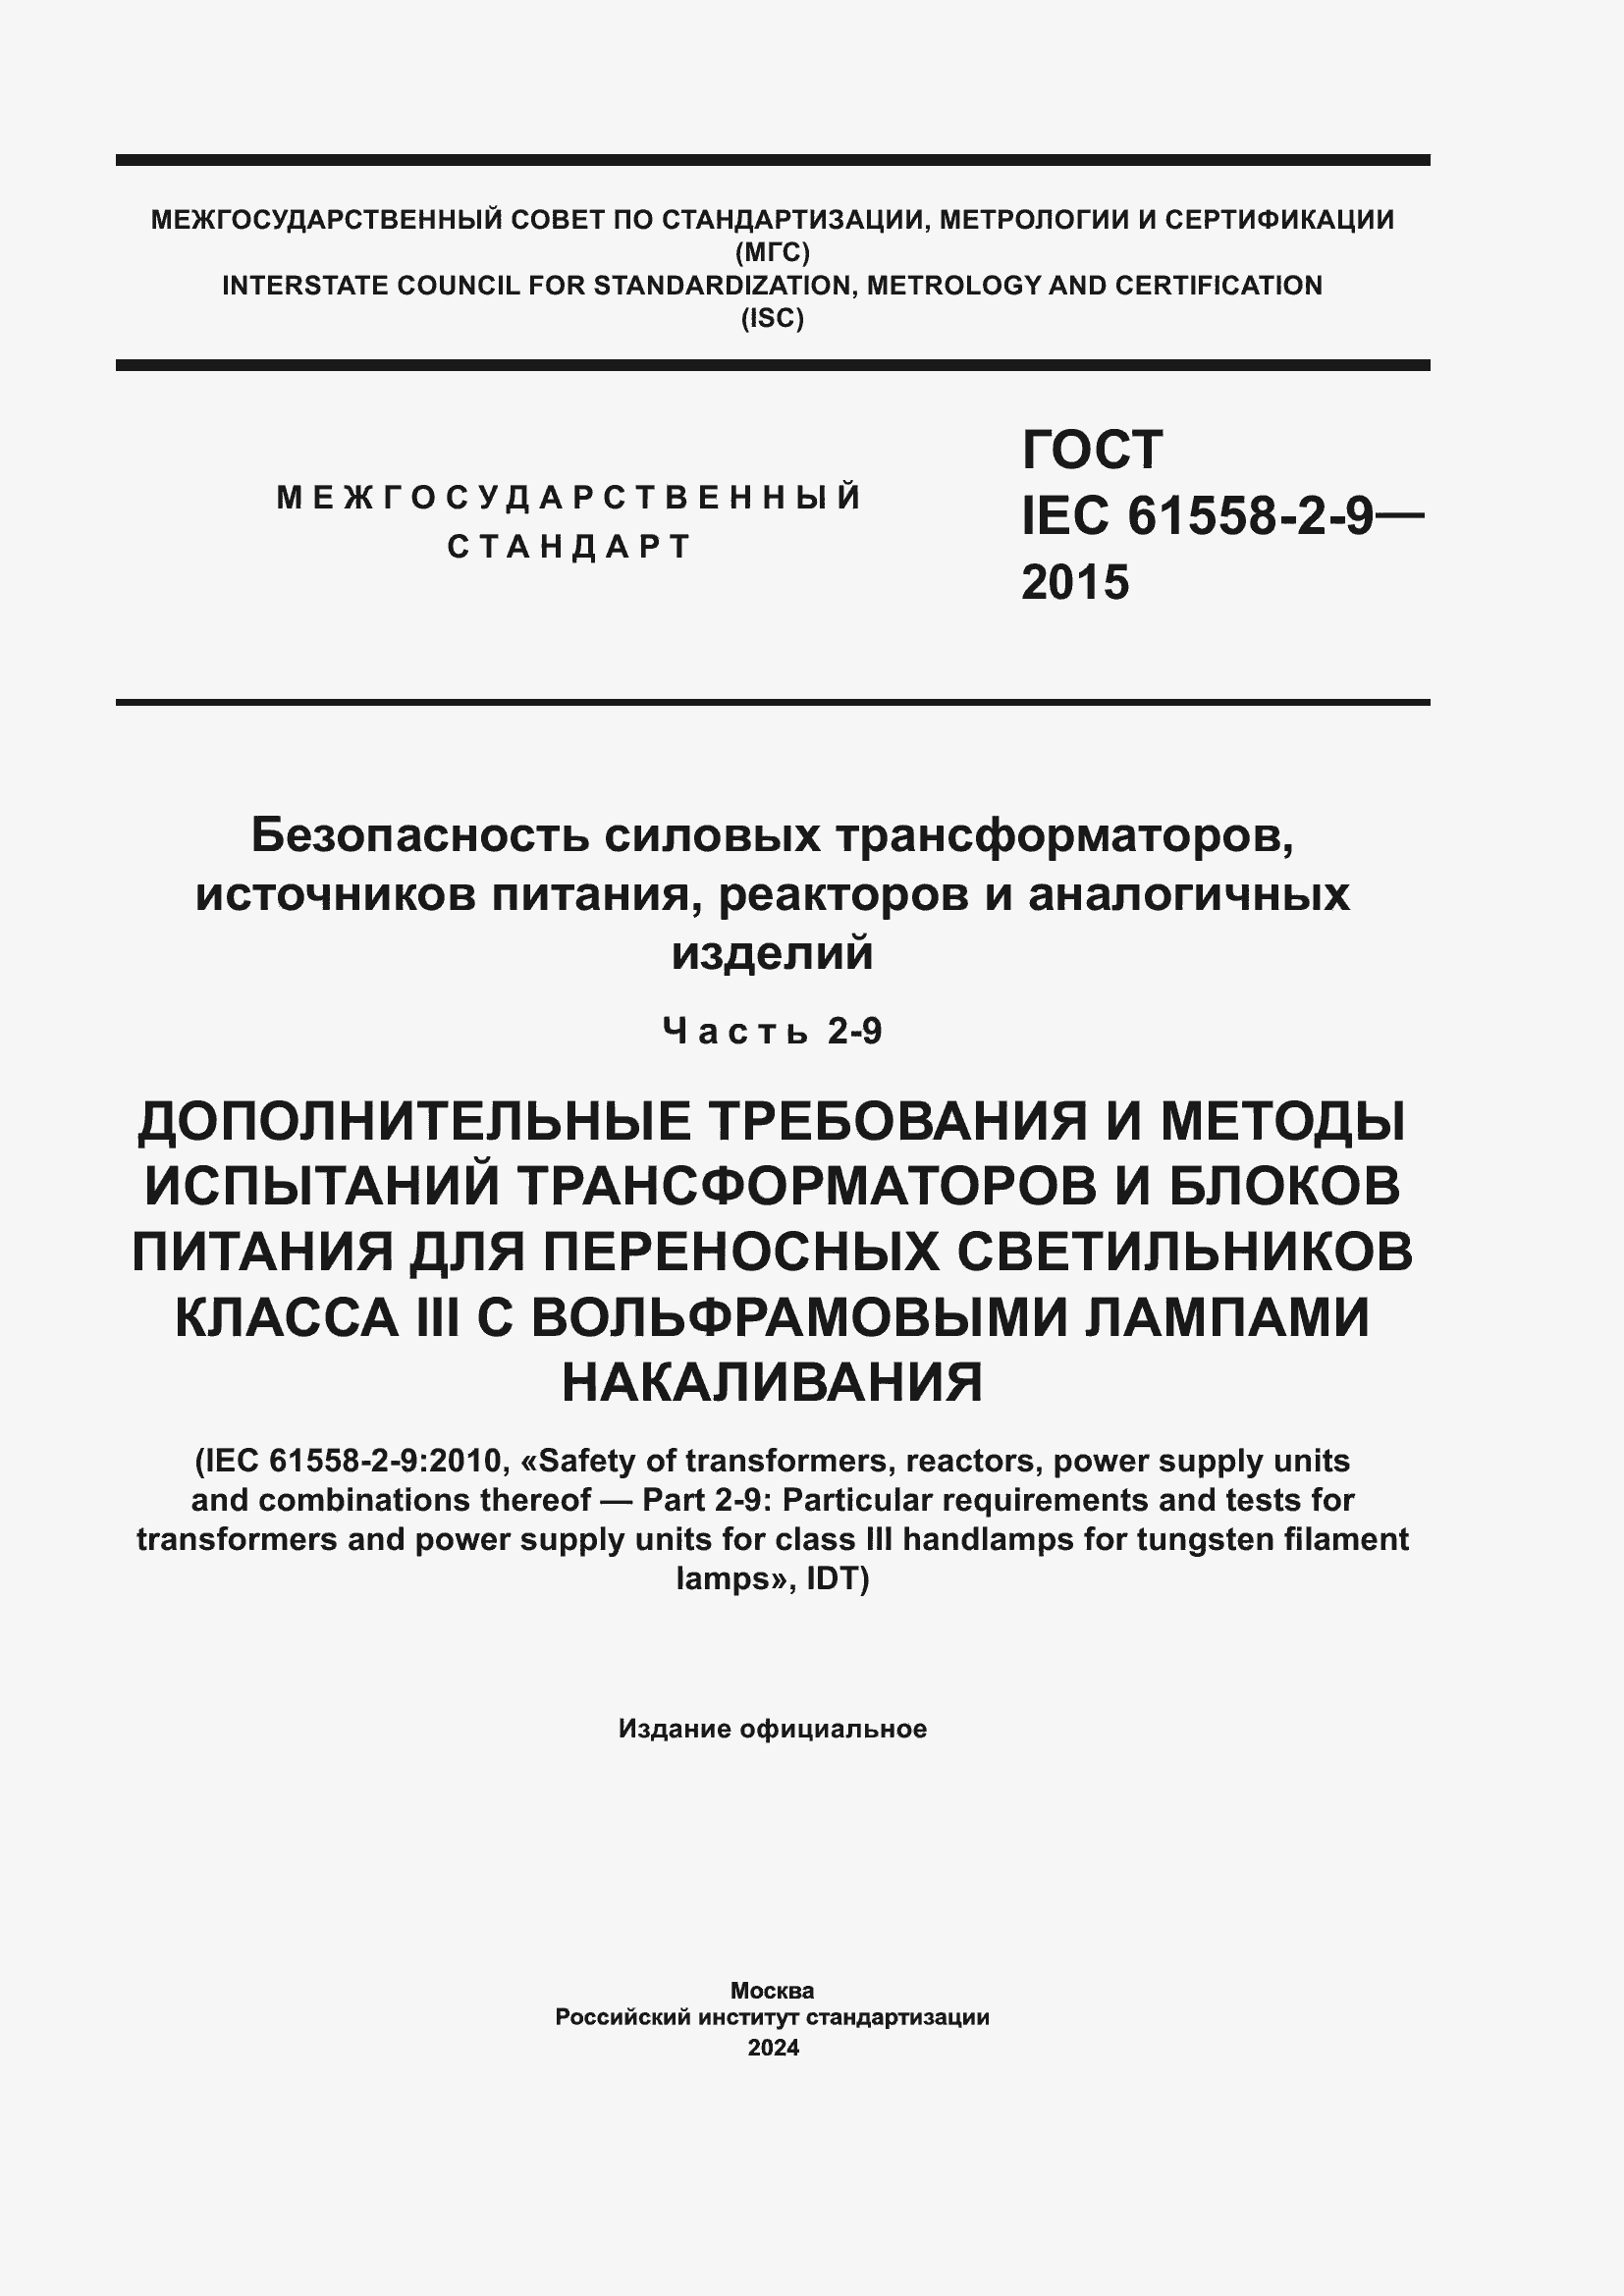  IEC 61558-2-9-2015.  1